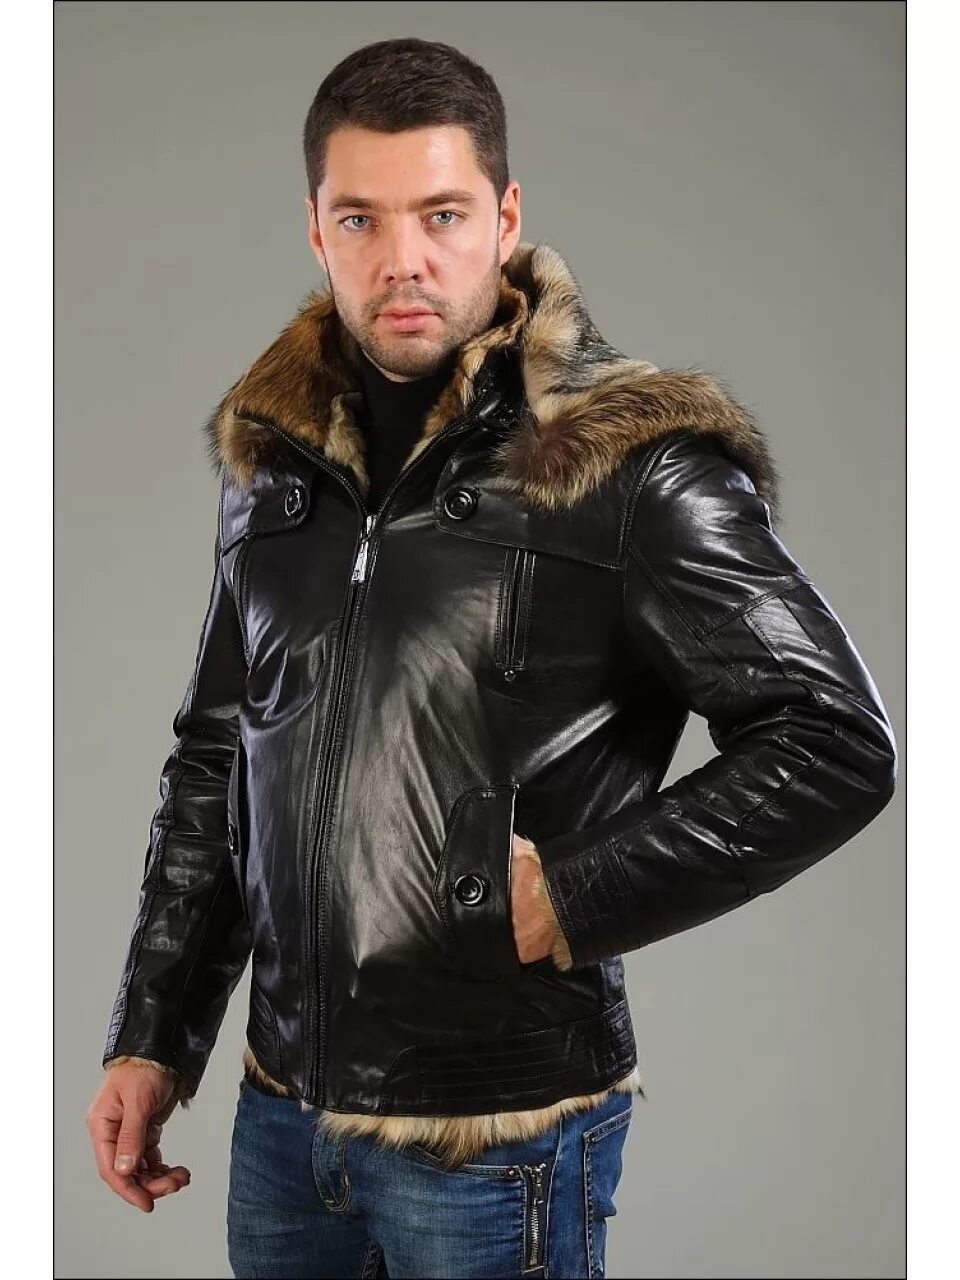 Турецкая зимняя кожаная мужская куртка Canmore. Falapu куртка кожаная мужская Волчий мех. Кожаная куртка с мехом мужская. Стильная мужская куртка с мехом.